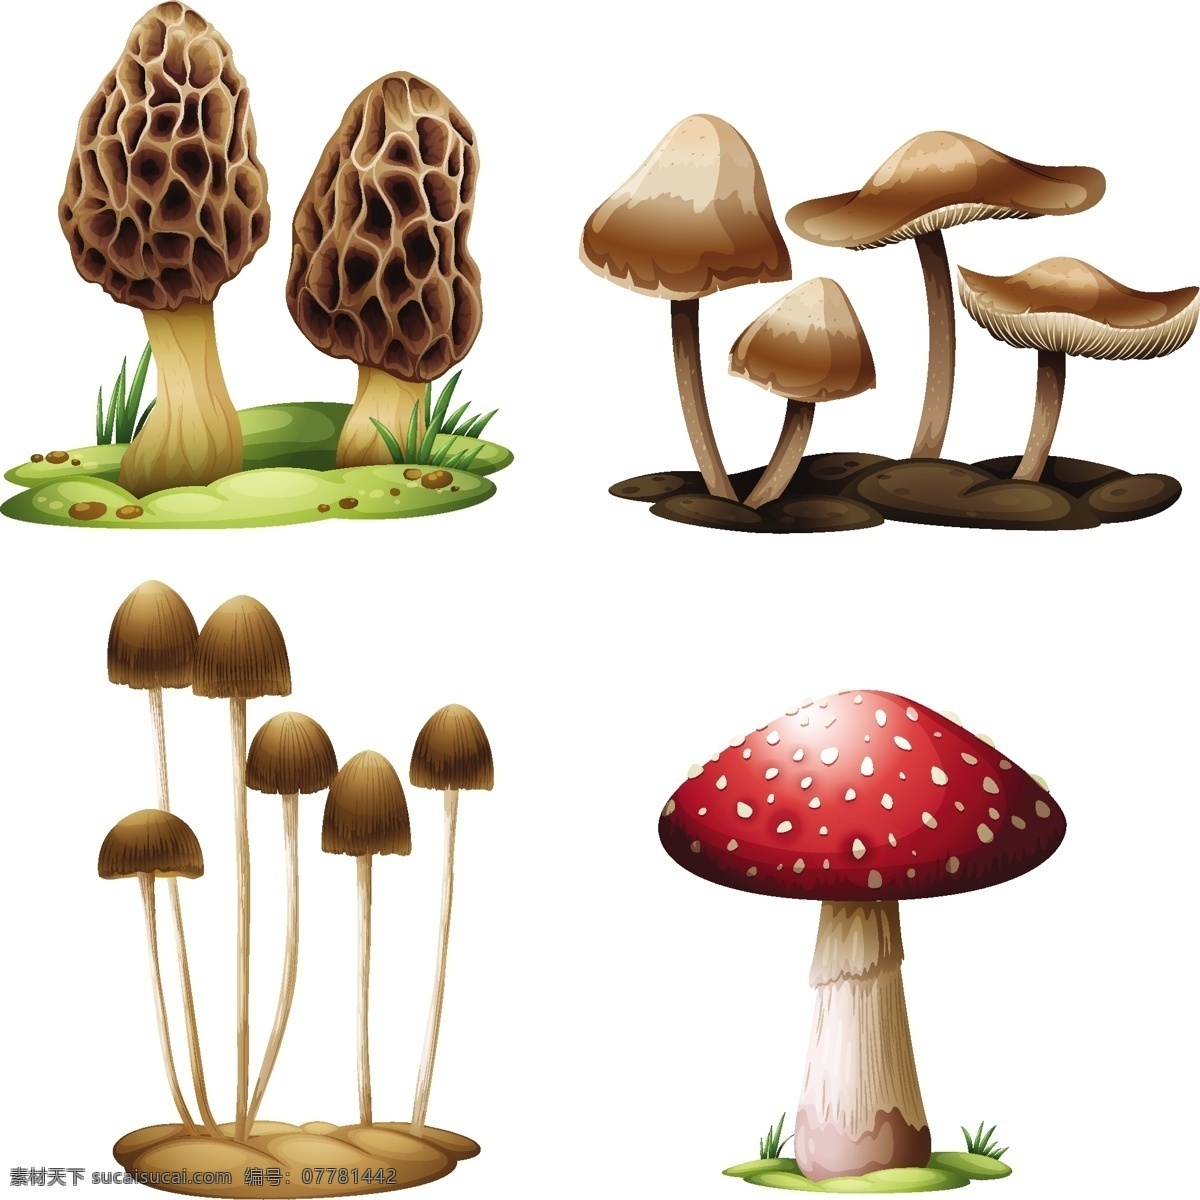 卡通 蘑菇 矢量 绘画 蔬菜水果 生物世界 蘑菇设计 矢量蘑菇 蘑菇素材 食物蔬菜